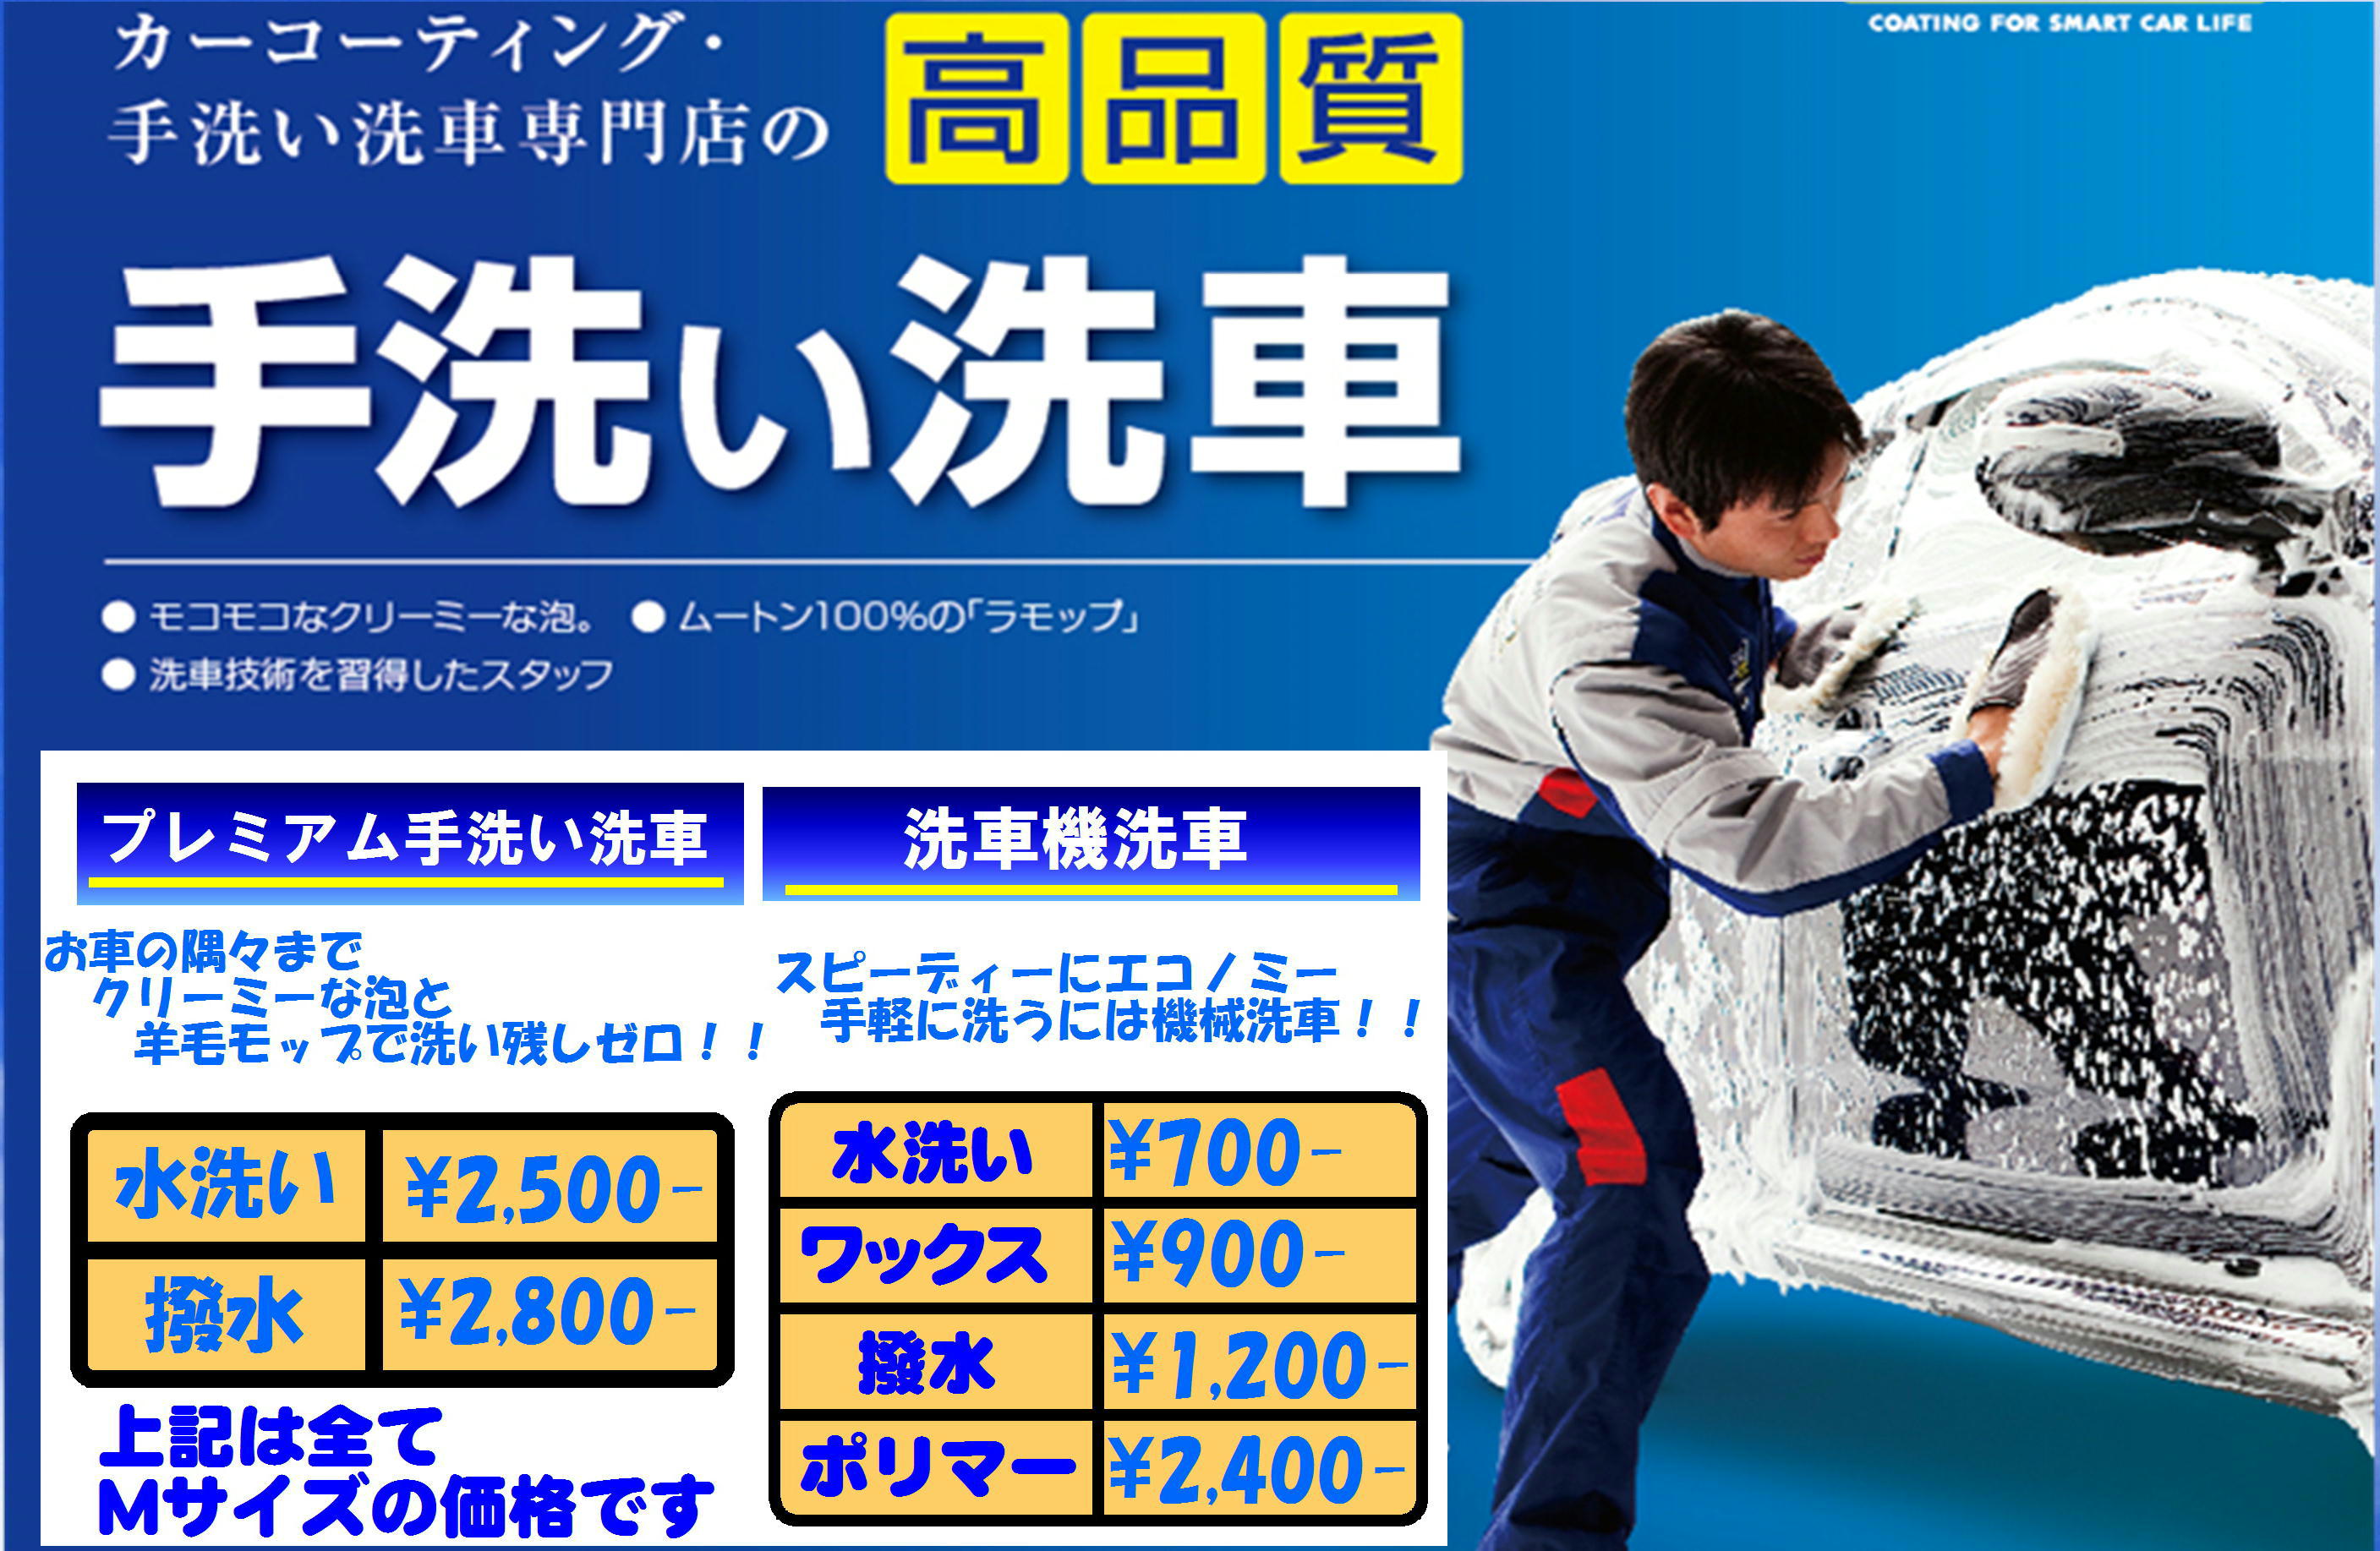 純水手洗い洗車 キーパープロショップの板倉石油 株 奈良のカーコーティング 洗車 マイカーリースお任せください